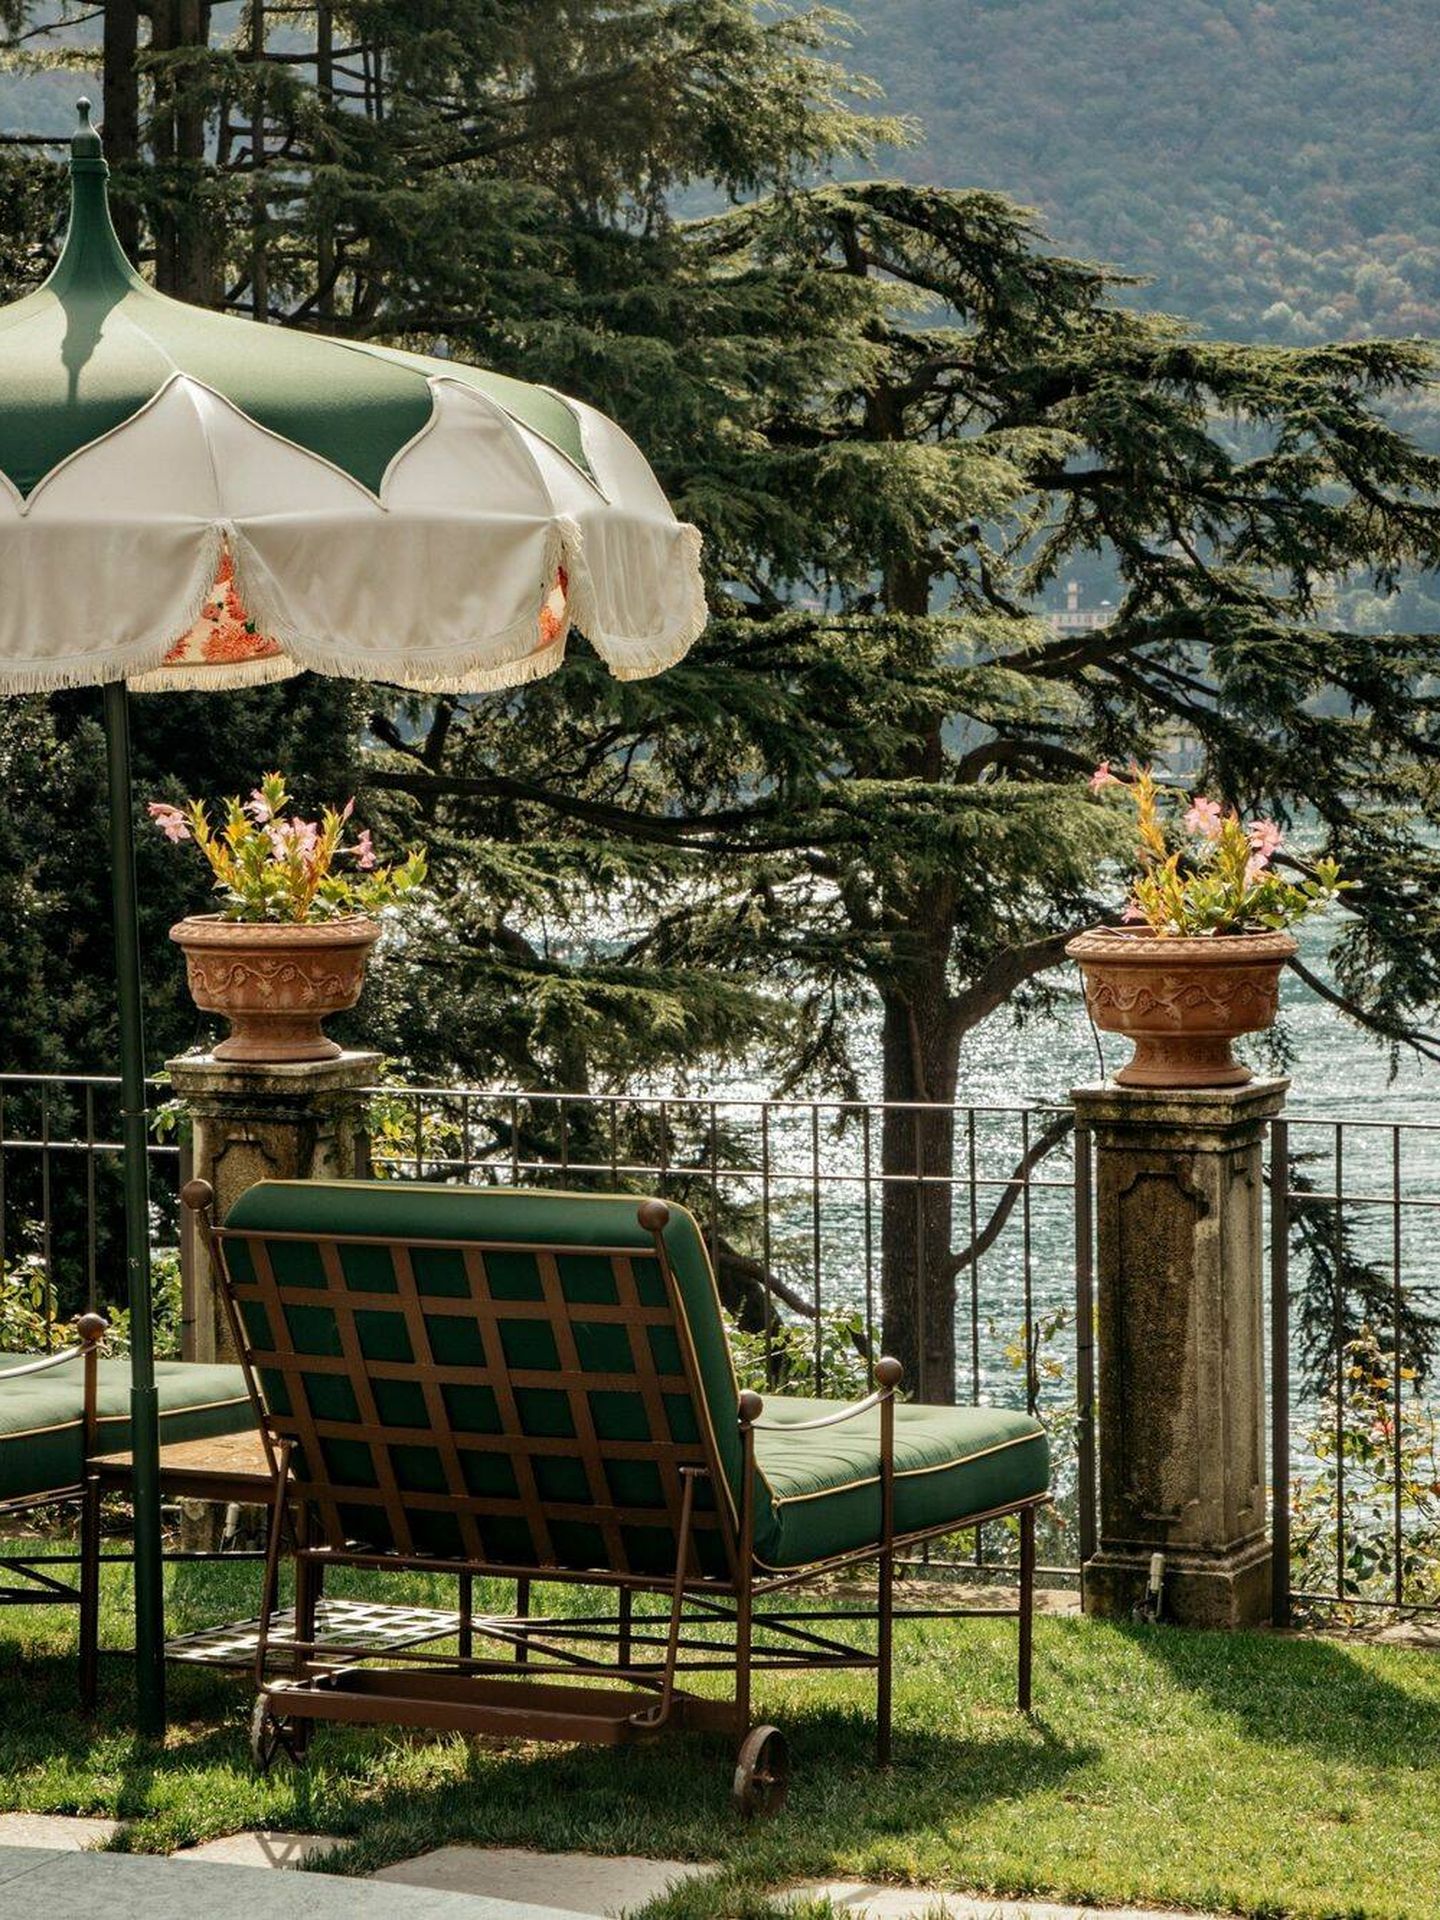 El Nº1: Passalacqua, en Moltrasio, Italia. Ubicado en una villa del siglo XVIII, está rodeado de espectaculares jardines en terraza y cuenta con 24 exclusivas habitaciones. Derroche barroco con vistas al lago Como. (Cortesía)